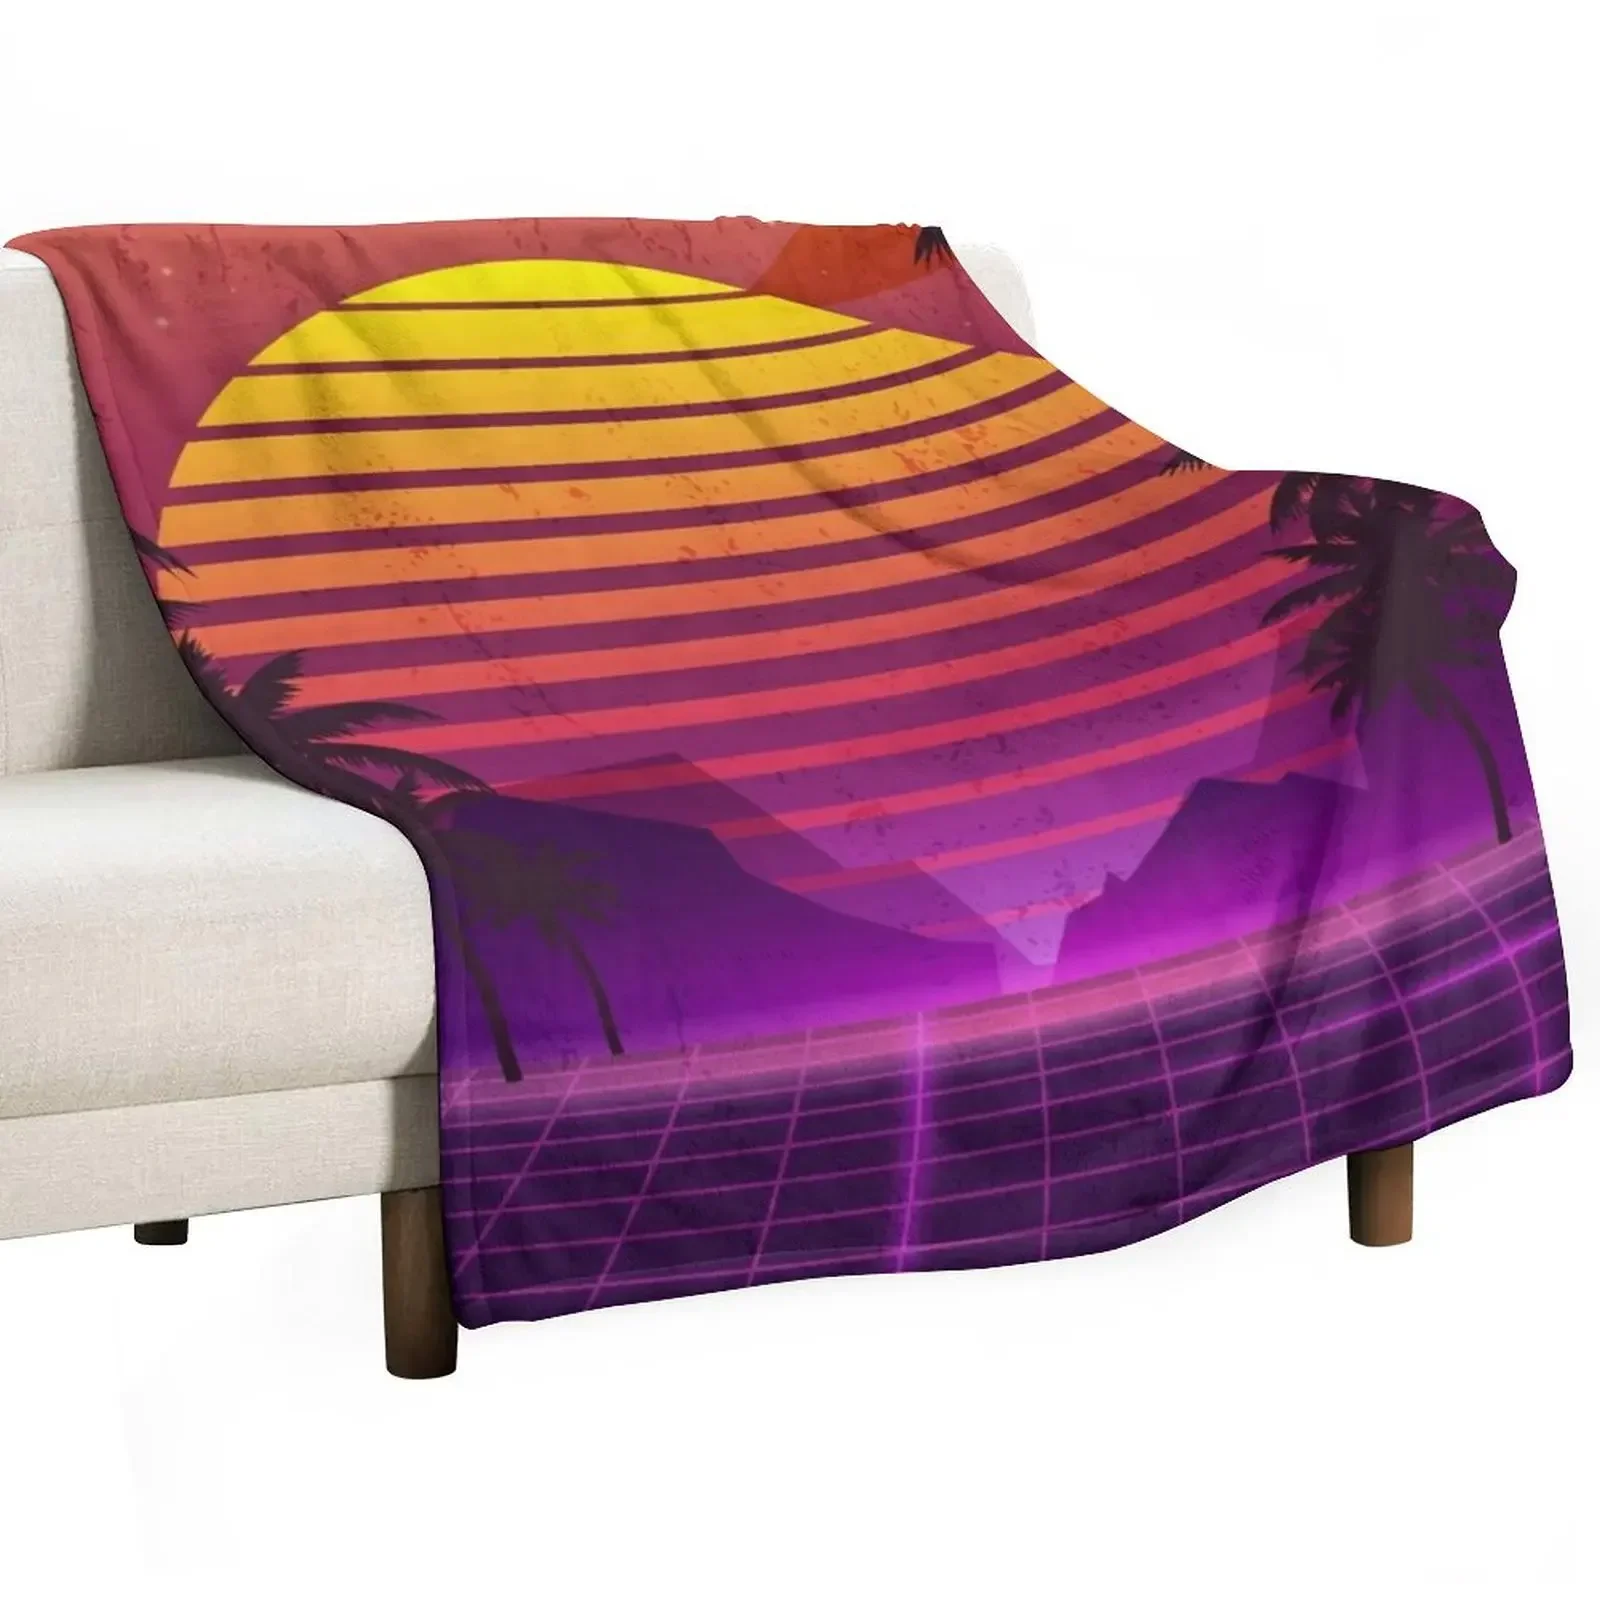 

Одеяло с пальмами в стиле 80-х, закат, Воздушная волна, мягкое летнее одеяло, индивидуальный подарок, плед на диван, одеяла